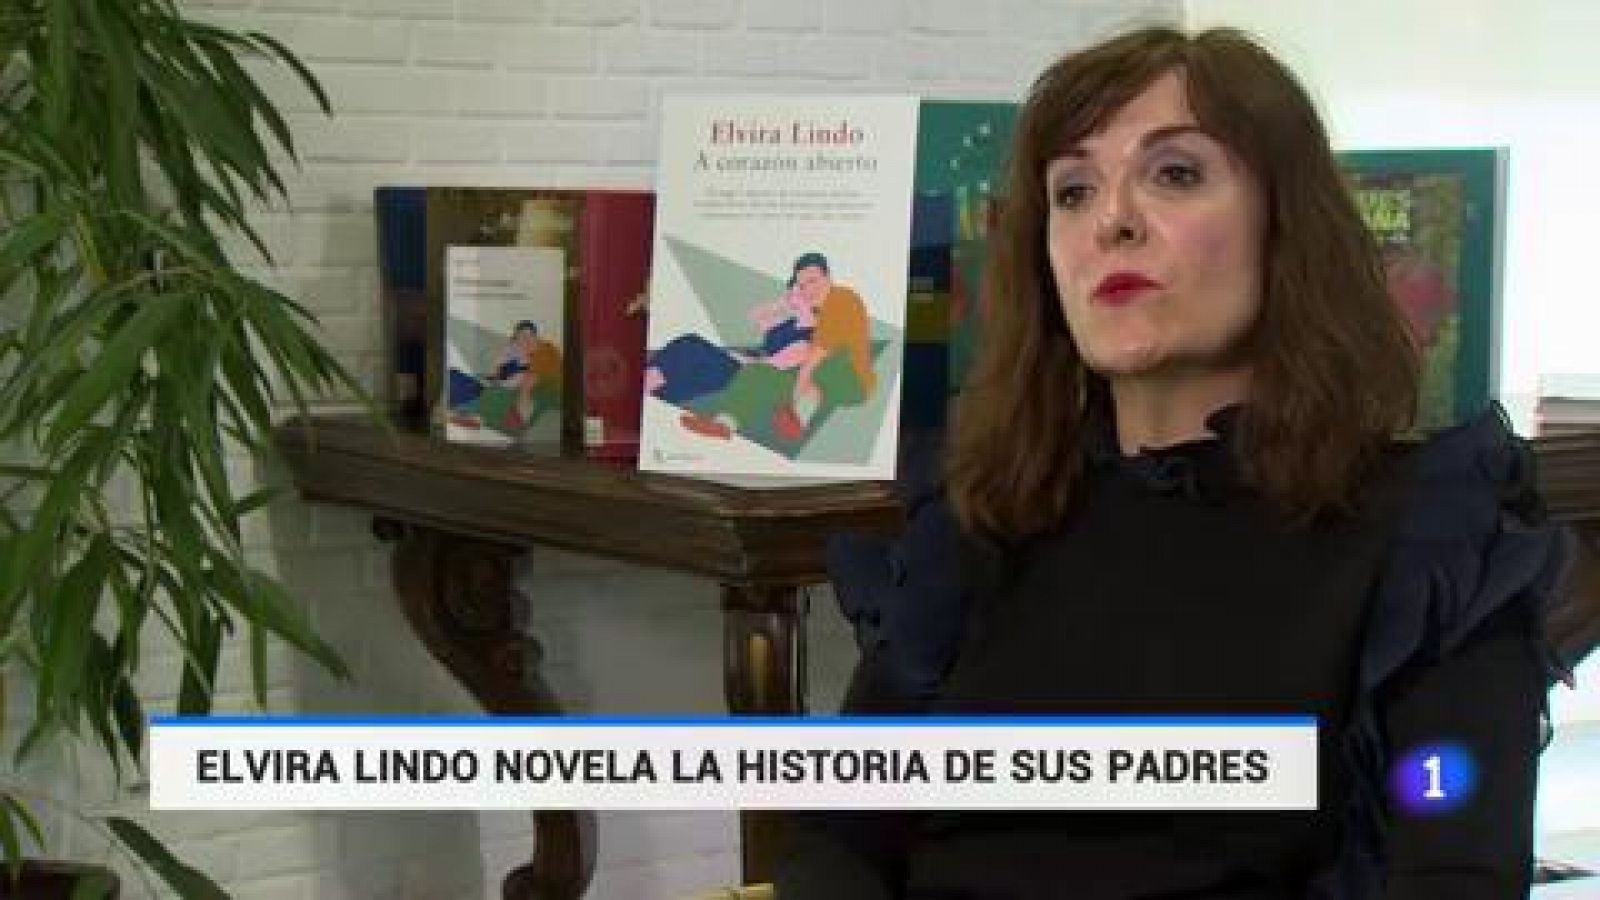 Elvira Lindo regresa a la novela, después de 10 años, con 'A corazón abierto'